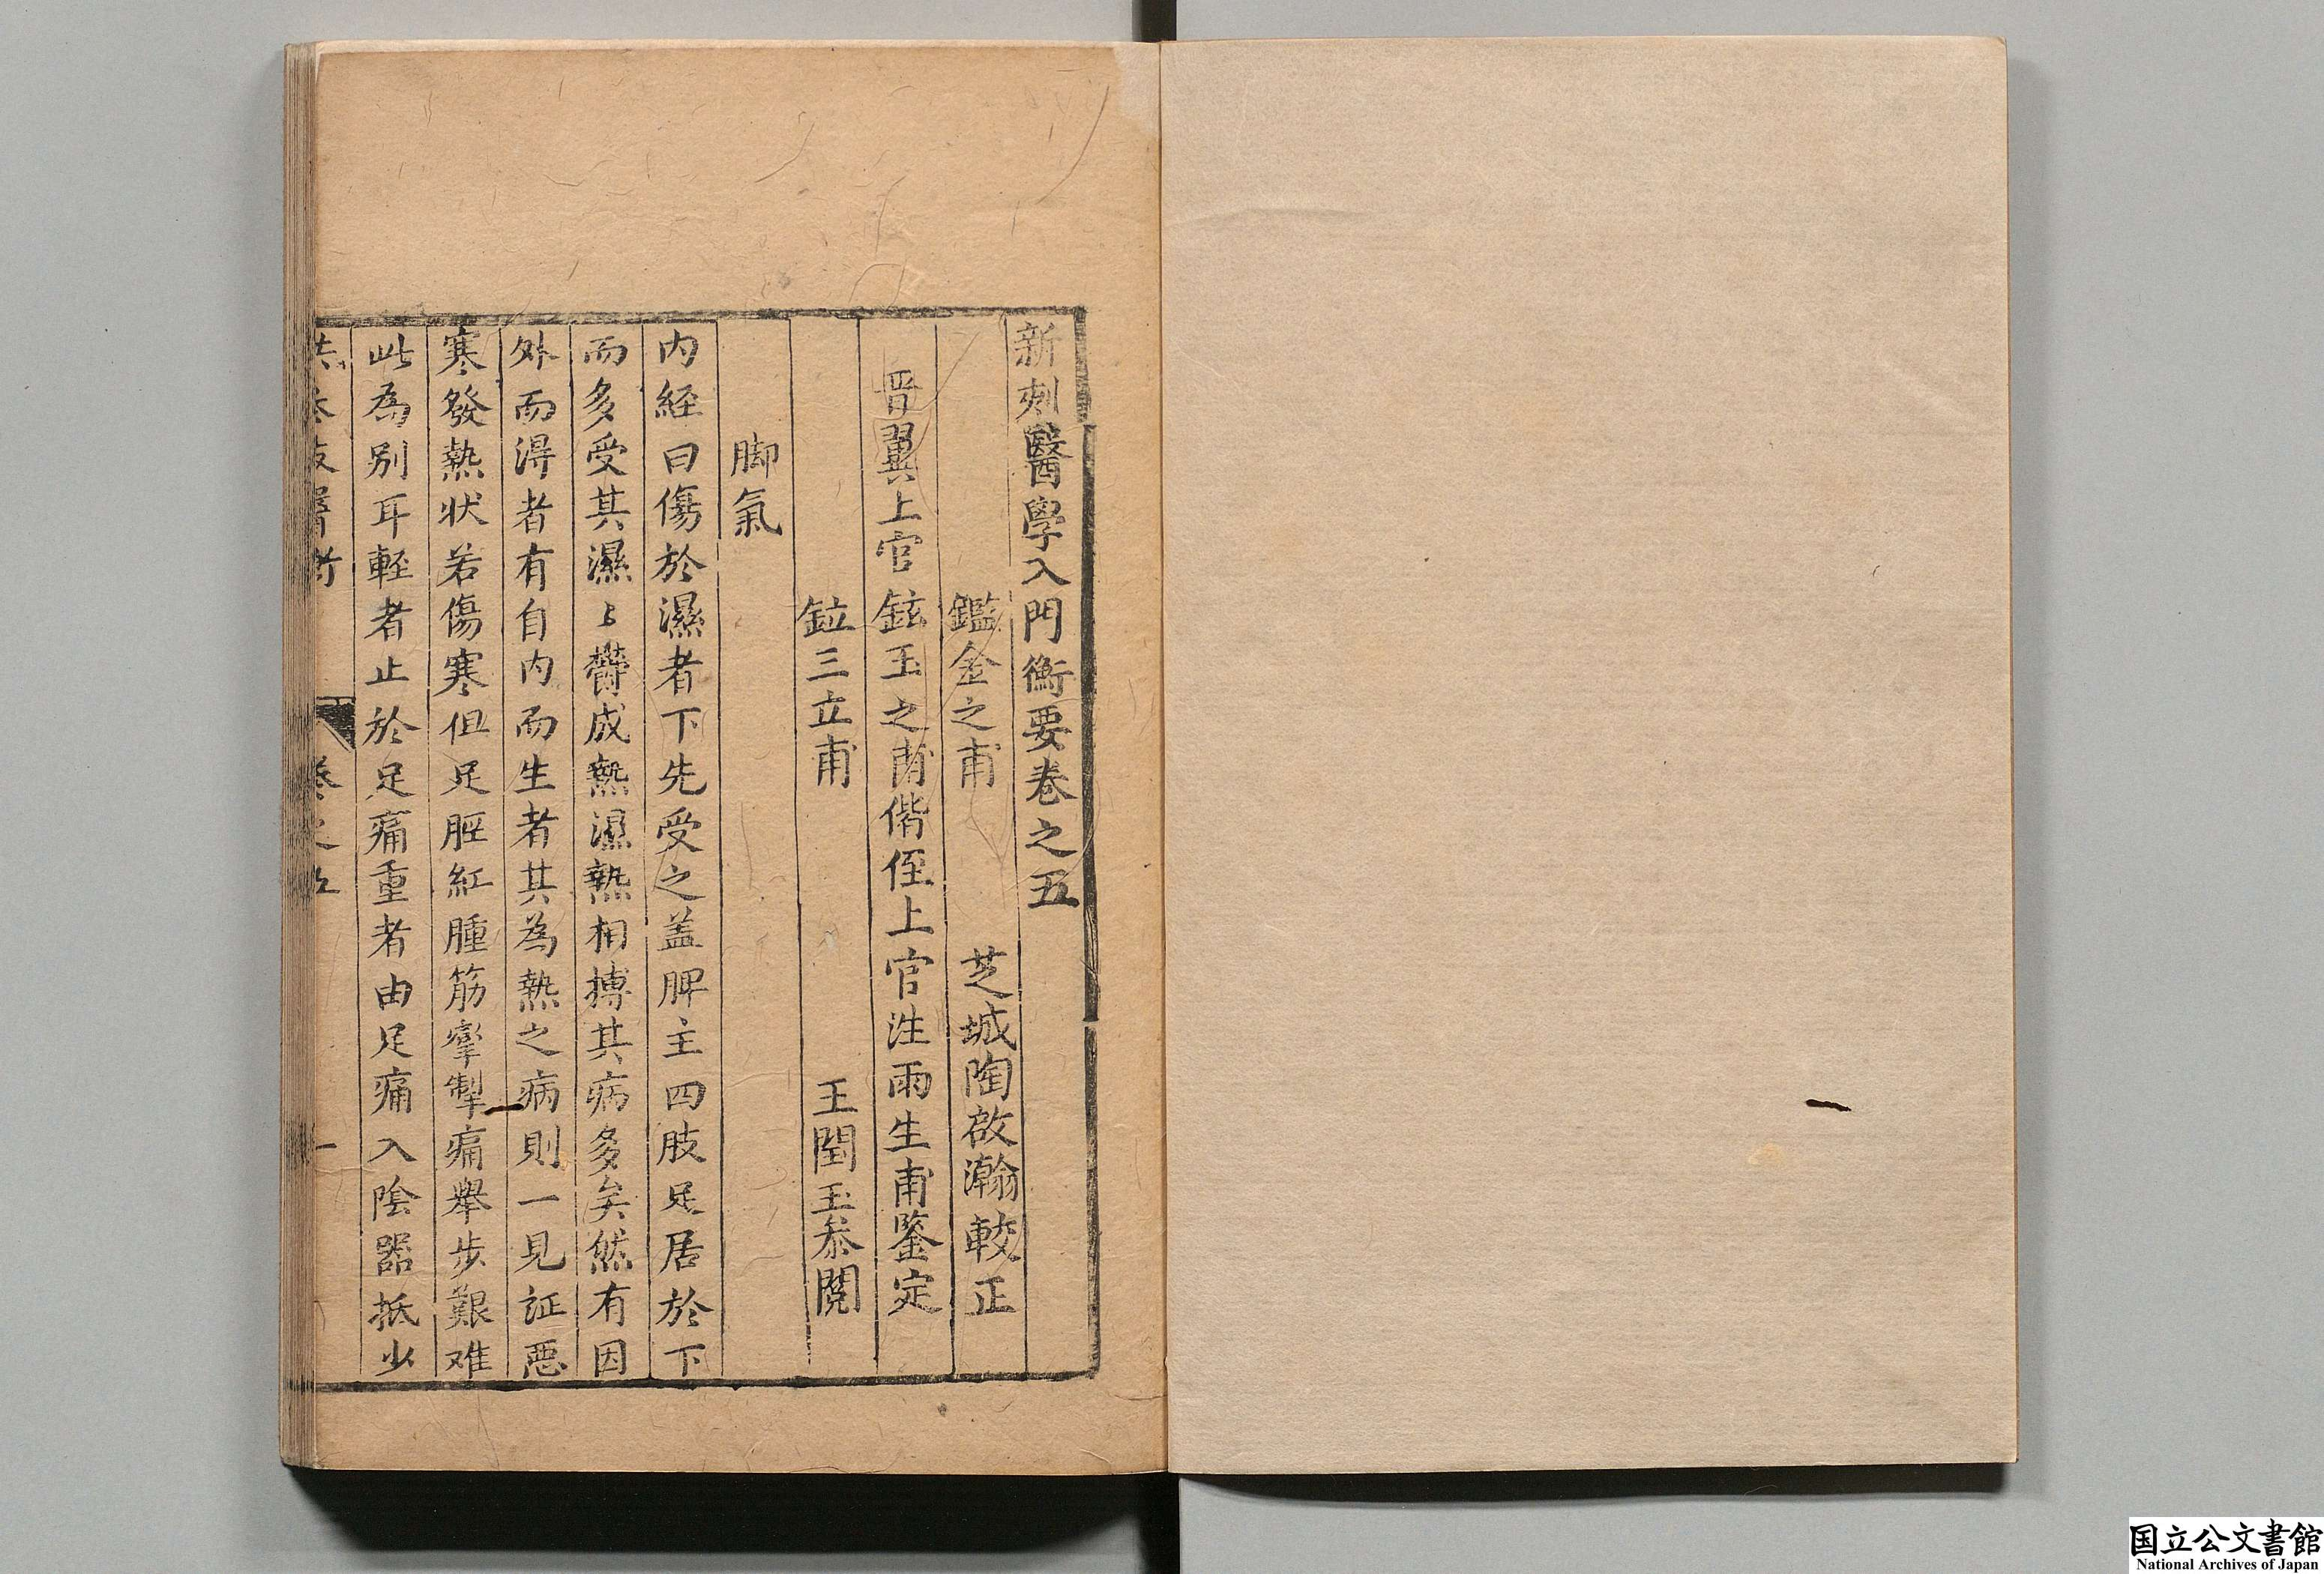 古籍数字化- 新刻医学入门衡要全6卷清·洪正立编撰清顺治12年(1655年 